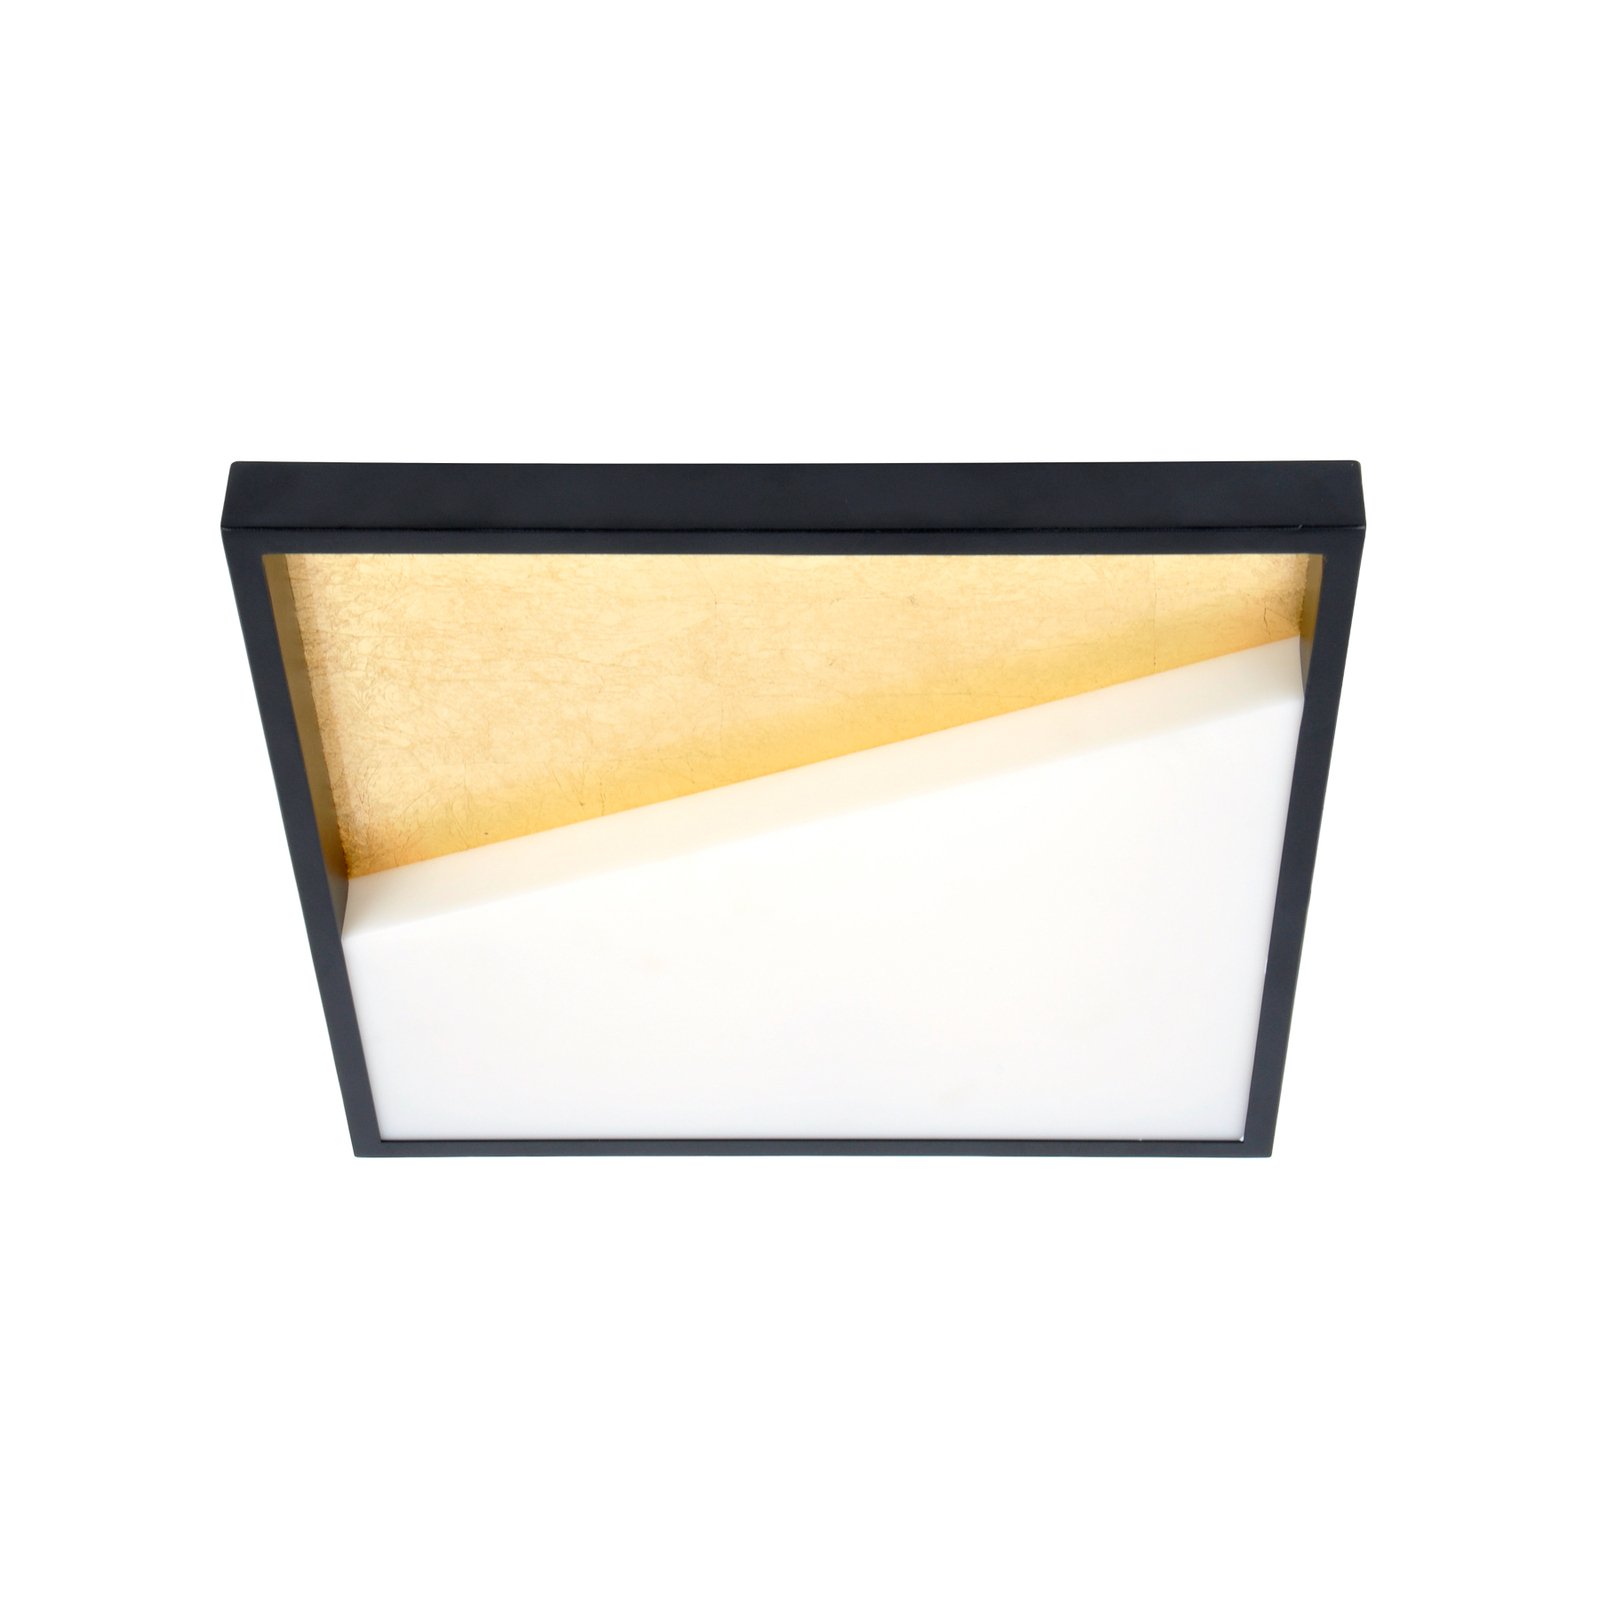 Vista LED-væglampe, guld/sort, 40 x 40 cm